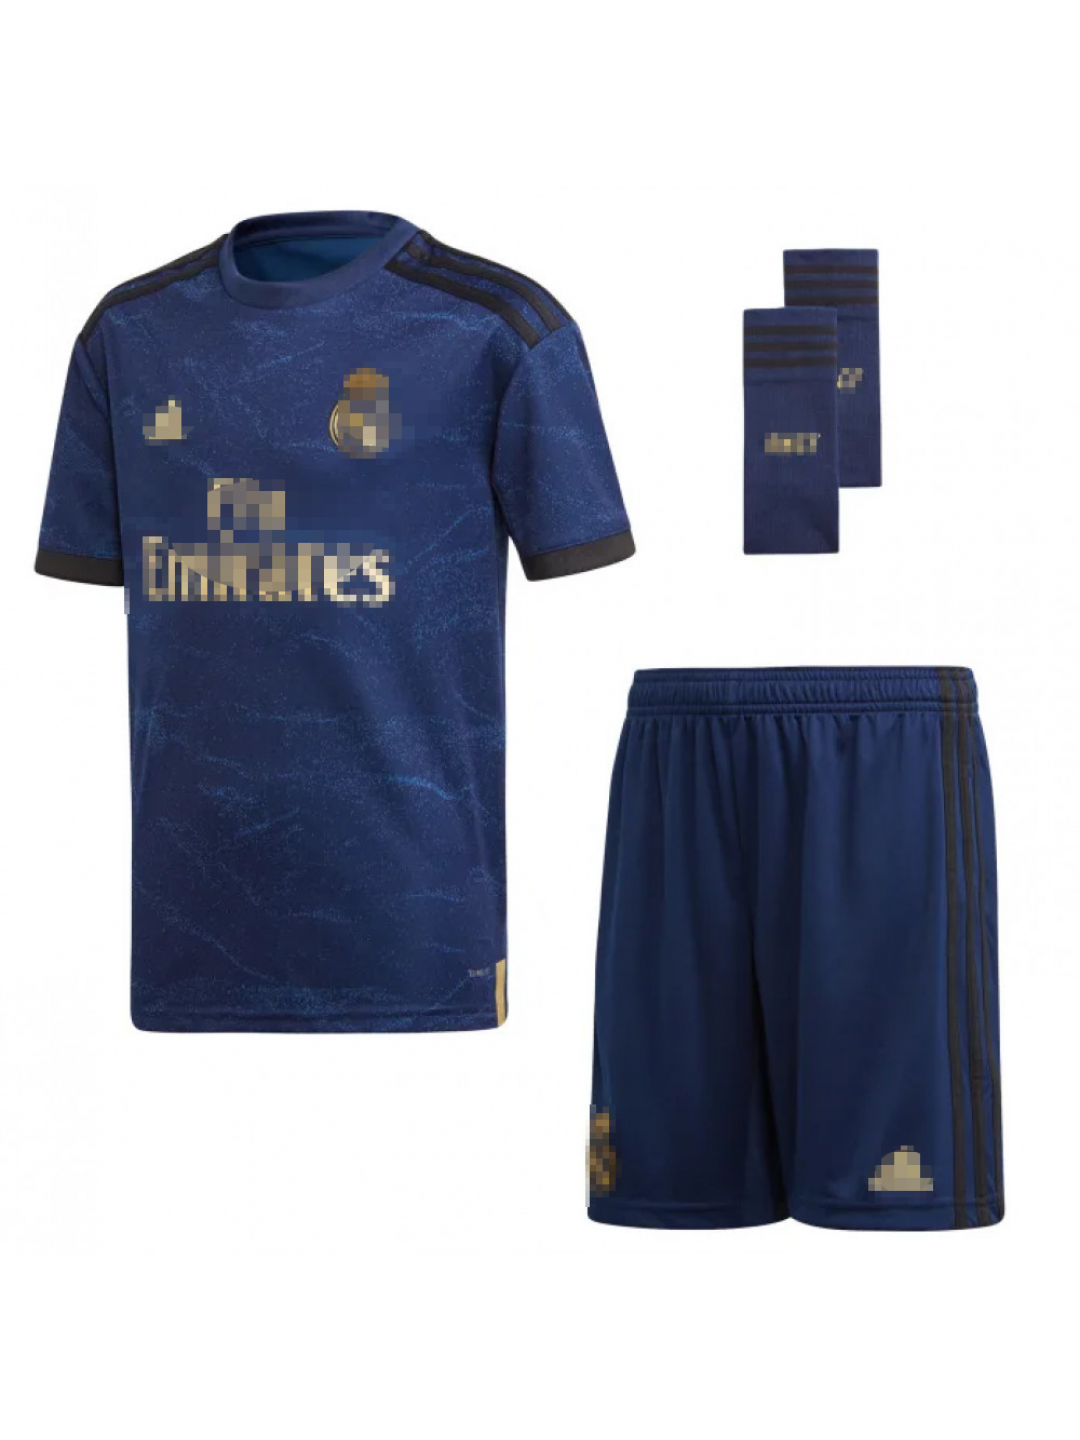 Real Madrid Conjunto Camiseta y Pantalón Segunda Equipación Infantil Hazard Producto Oficial Licenciado Temporada 2019-2020 Color Blanco Azul Marino, Talla 12 